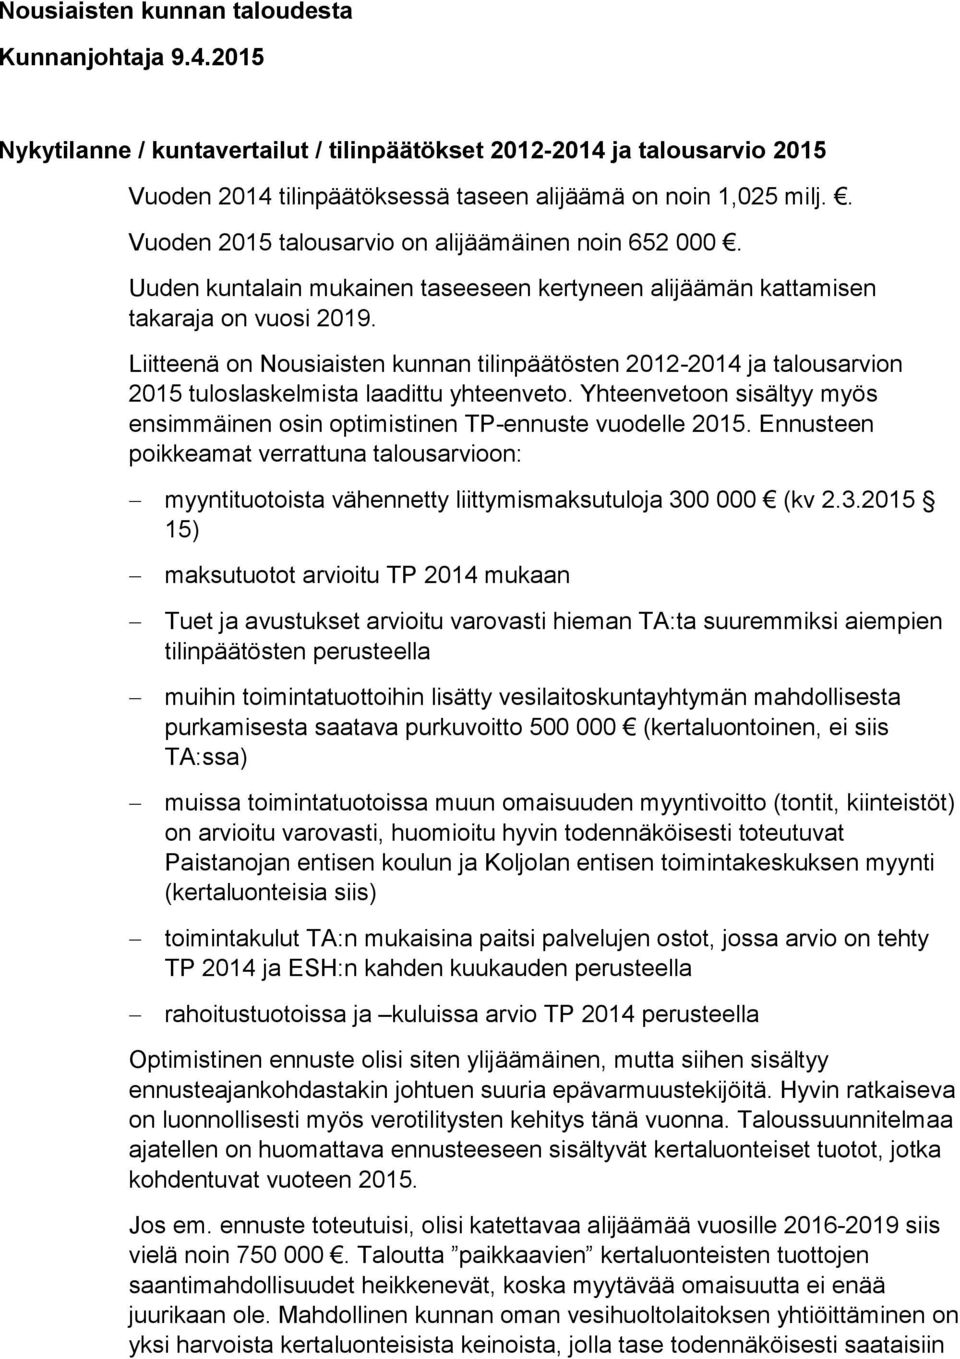 Liitteenä on Nousiaisten kunnan tilinpäätösten 2012-2014 ja talousarvion 2015 tuloslaskelmista laadittu yhteenveto. Yhteenvetoon sisältyy myös ensimmäinen osin optimistinen TP-ennuste vuodelle 2015.